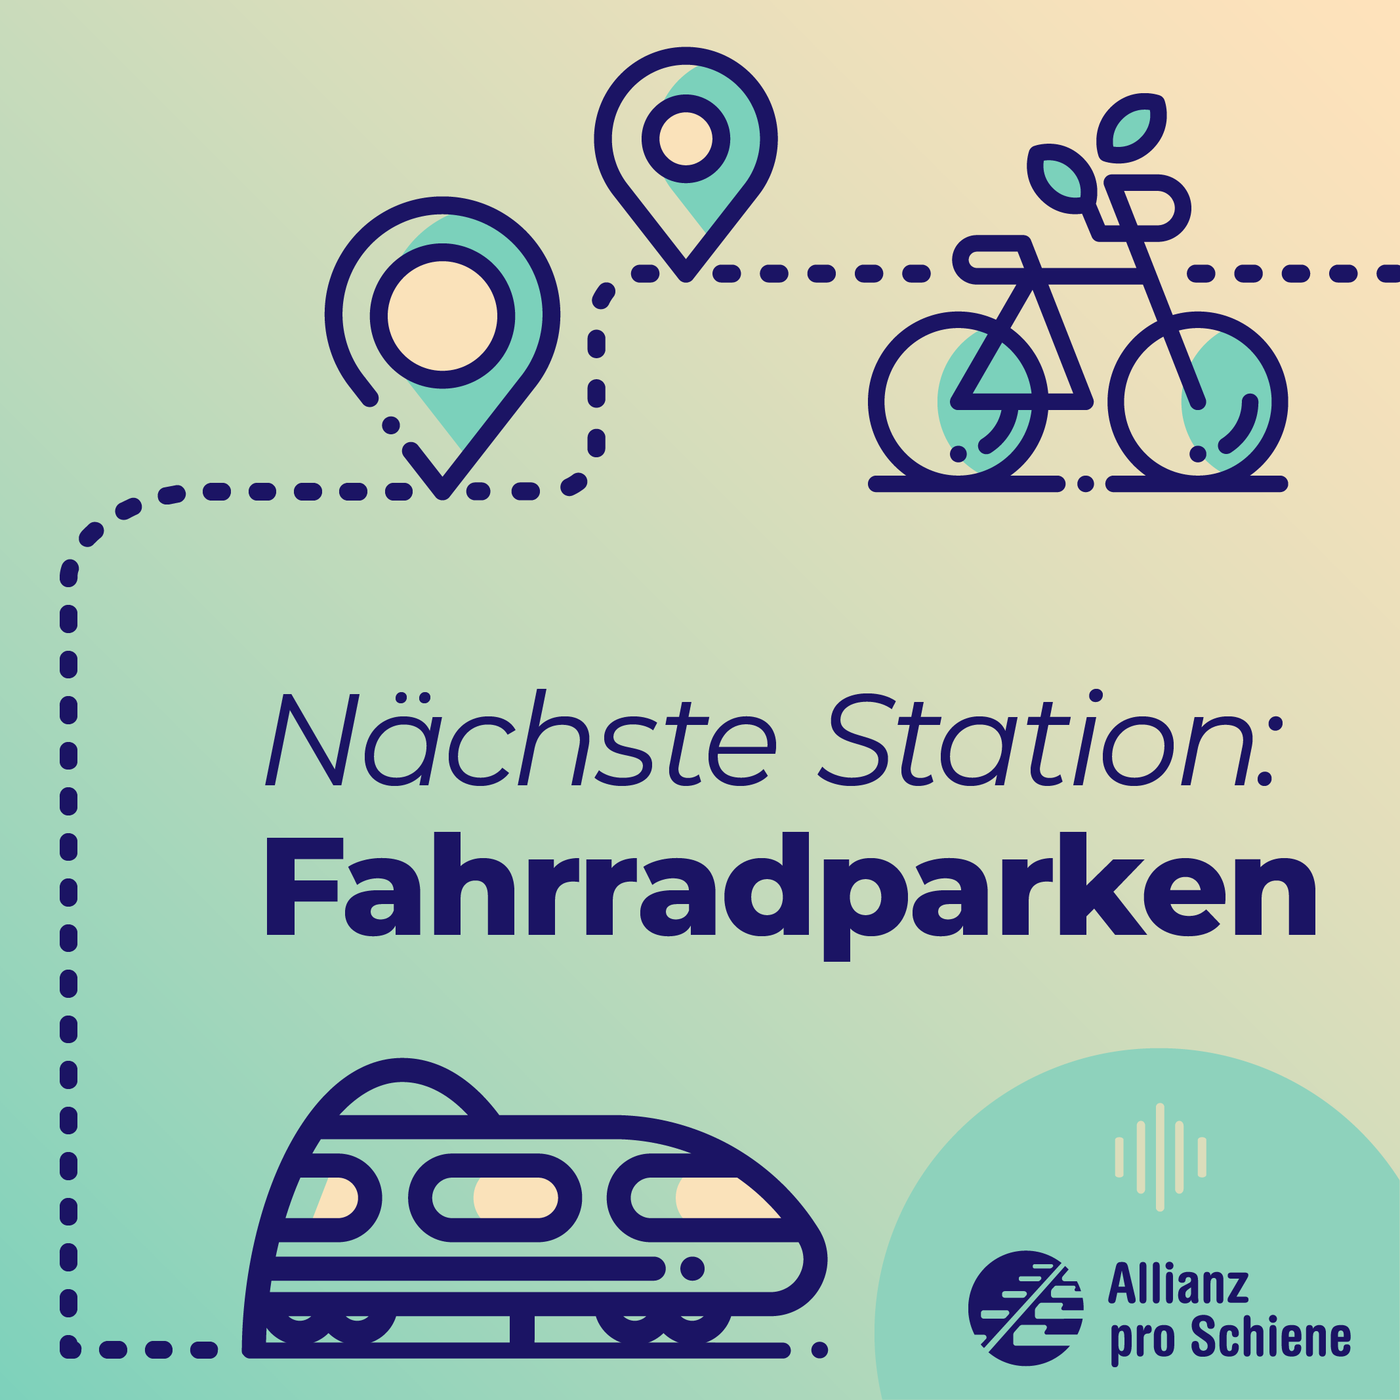 Nächste Station: Fahrradparken